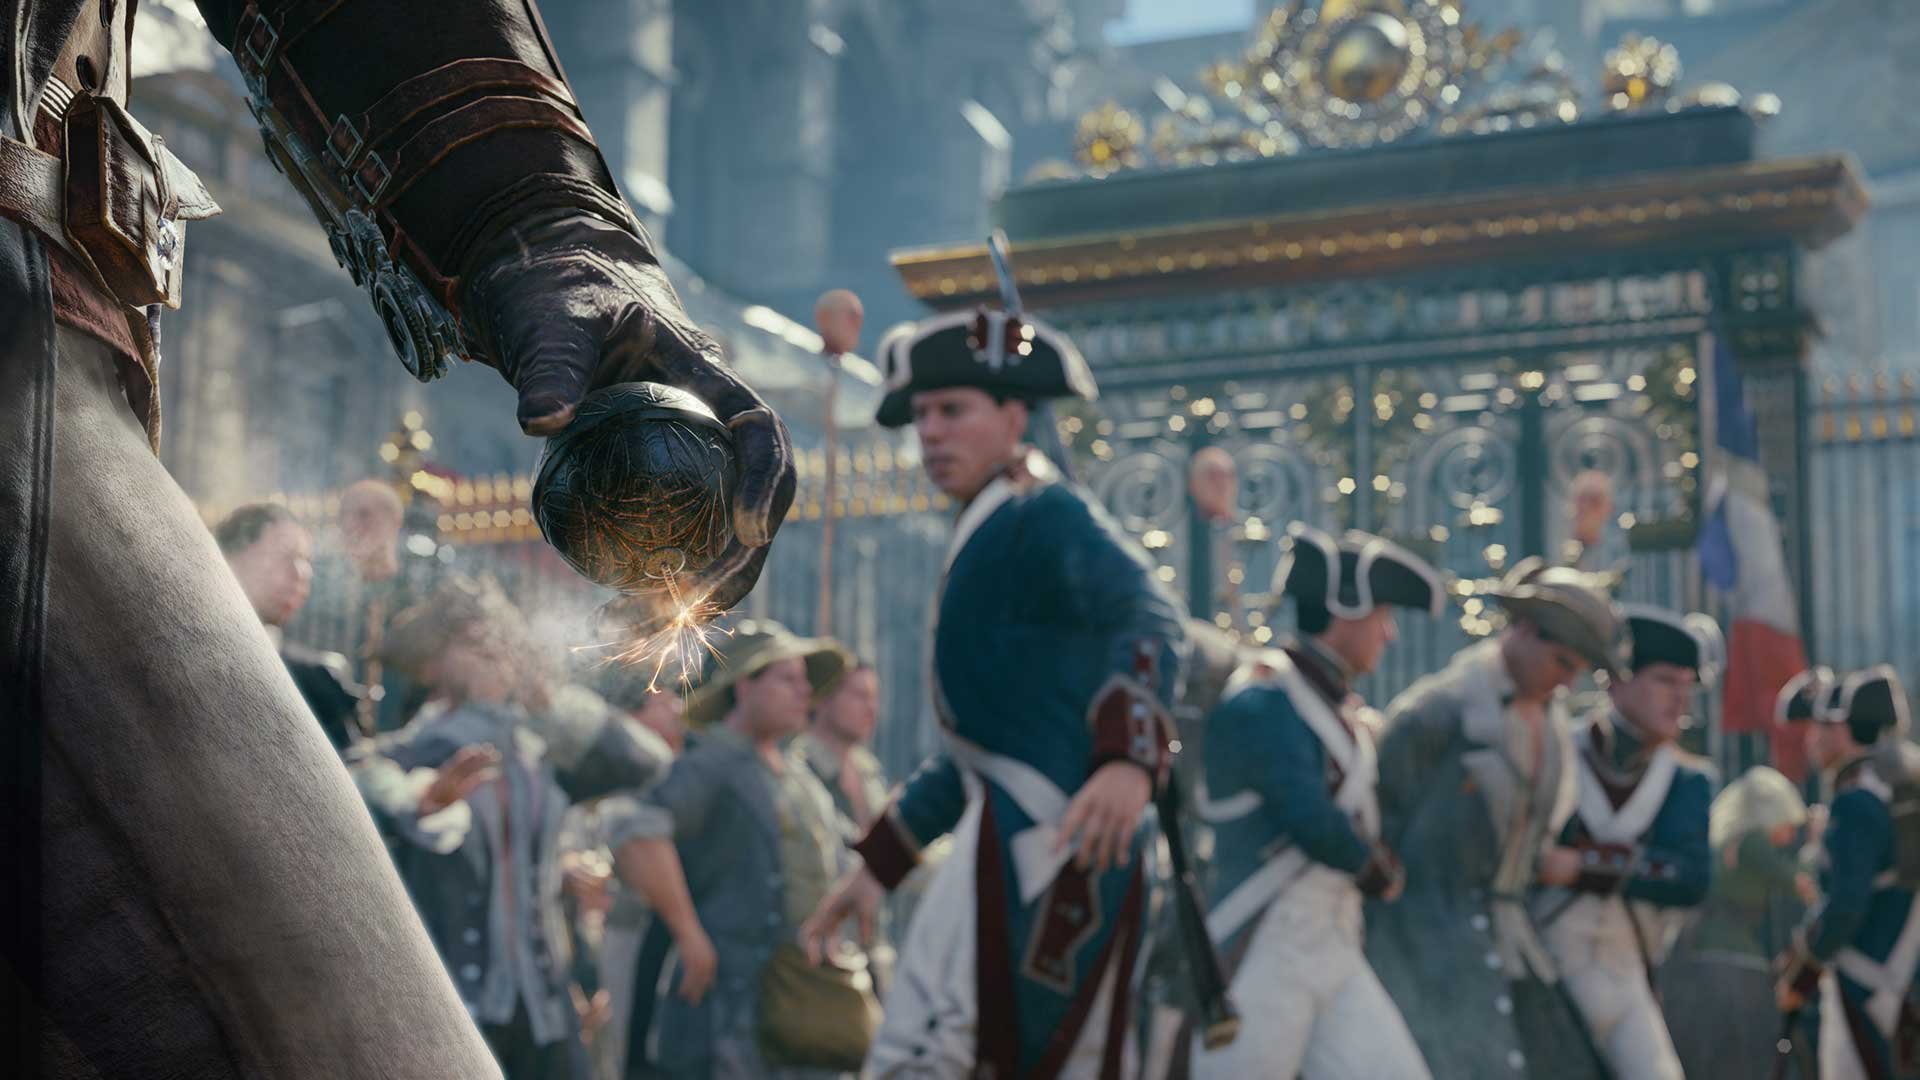 Nové úžasné screeny z Assassin's Creed: Unity